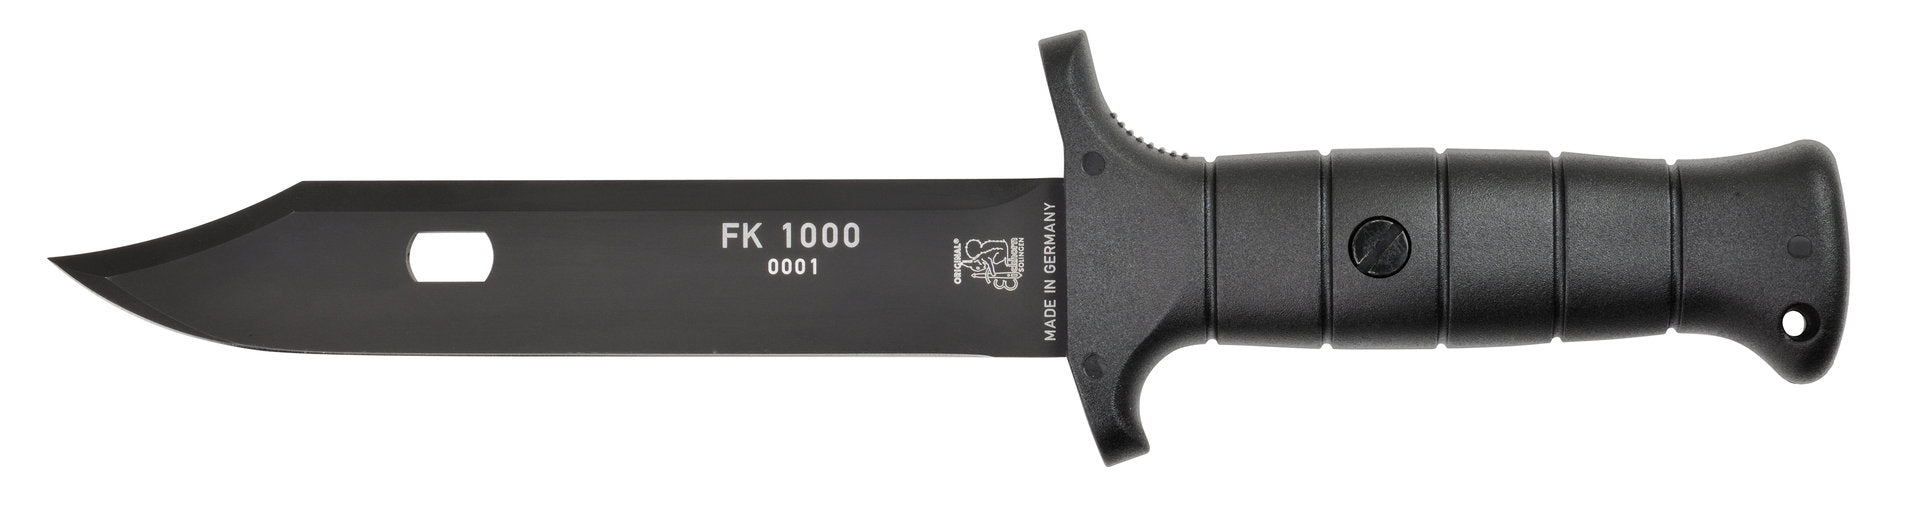 FK 1000 Couteau de campagne